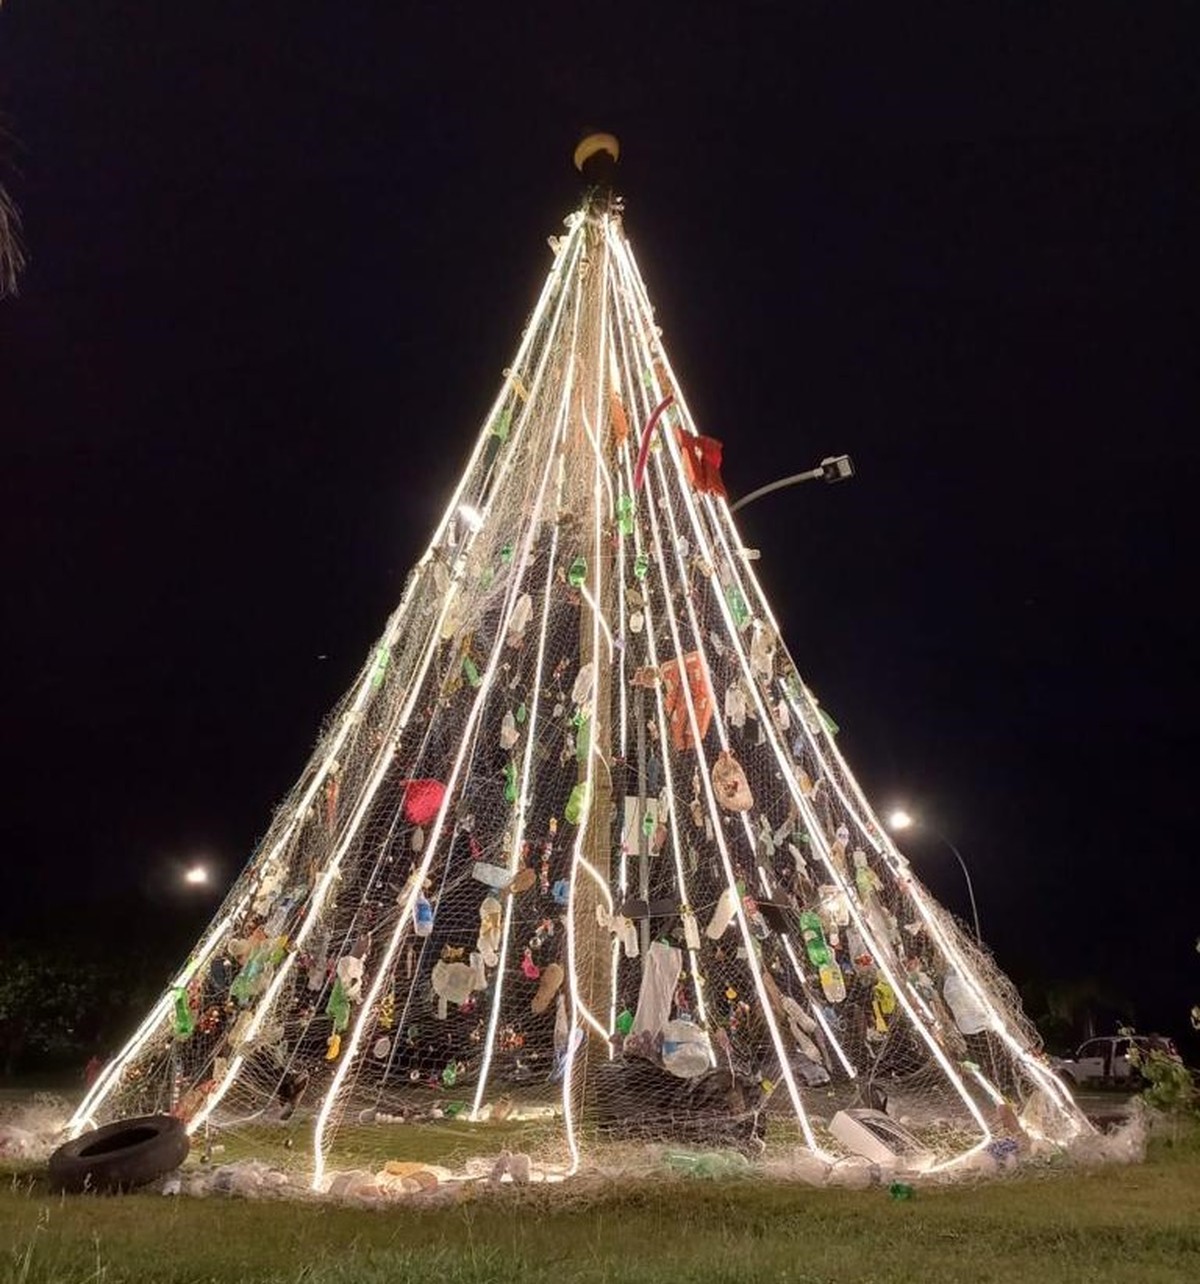 Natal Luz chega a Ubatuba e empolga a população – Prefeitura Municipal de  Ubatuba